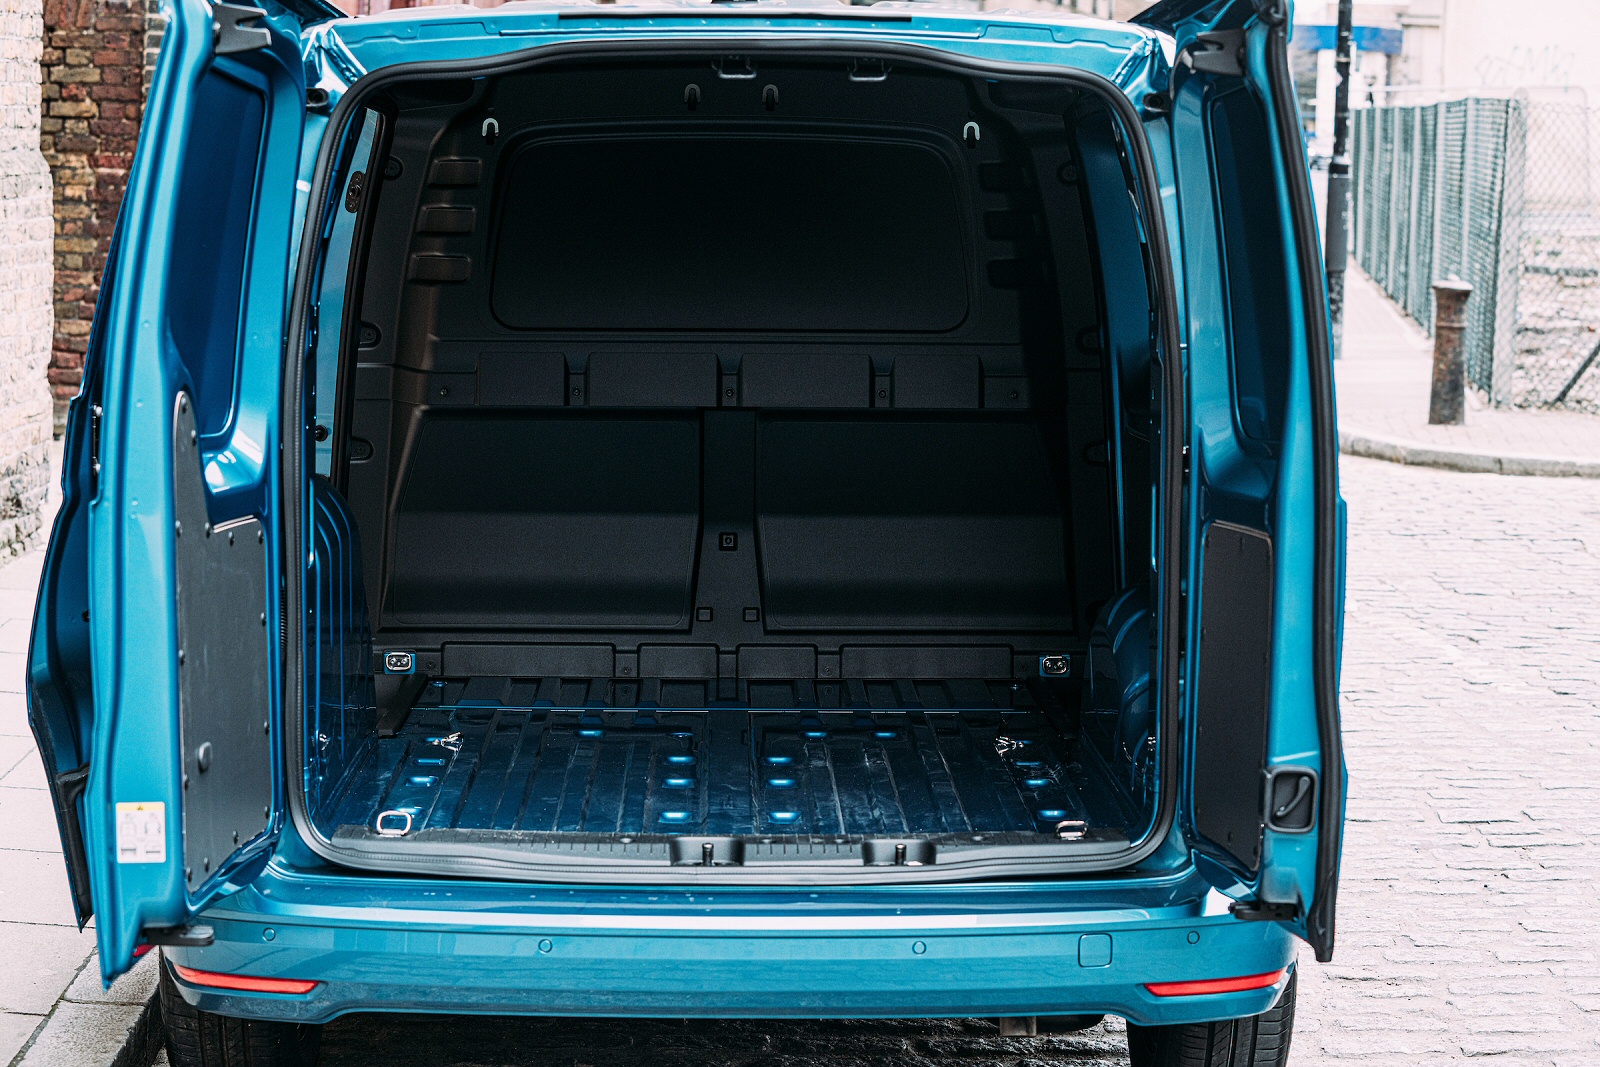 Volkswagen CADDY CARGO MAXI C20 DIESEL 2.0 TDI 102PS Commerce Van [Business]